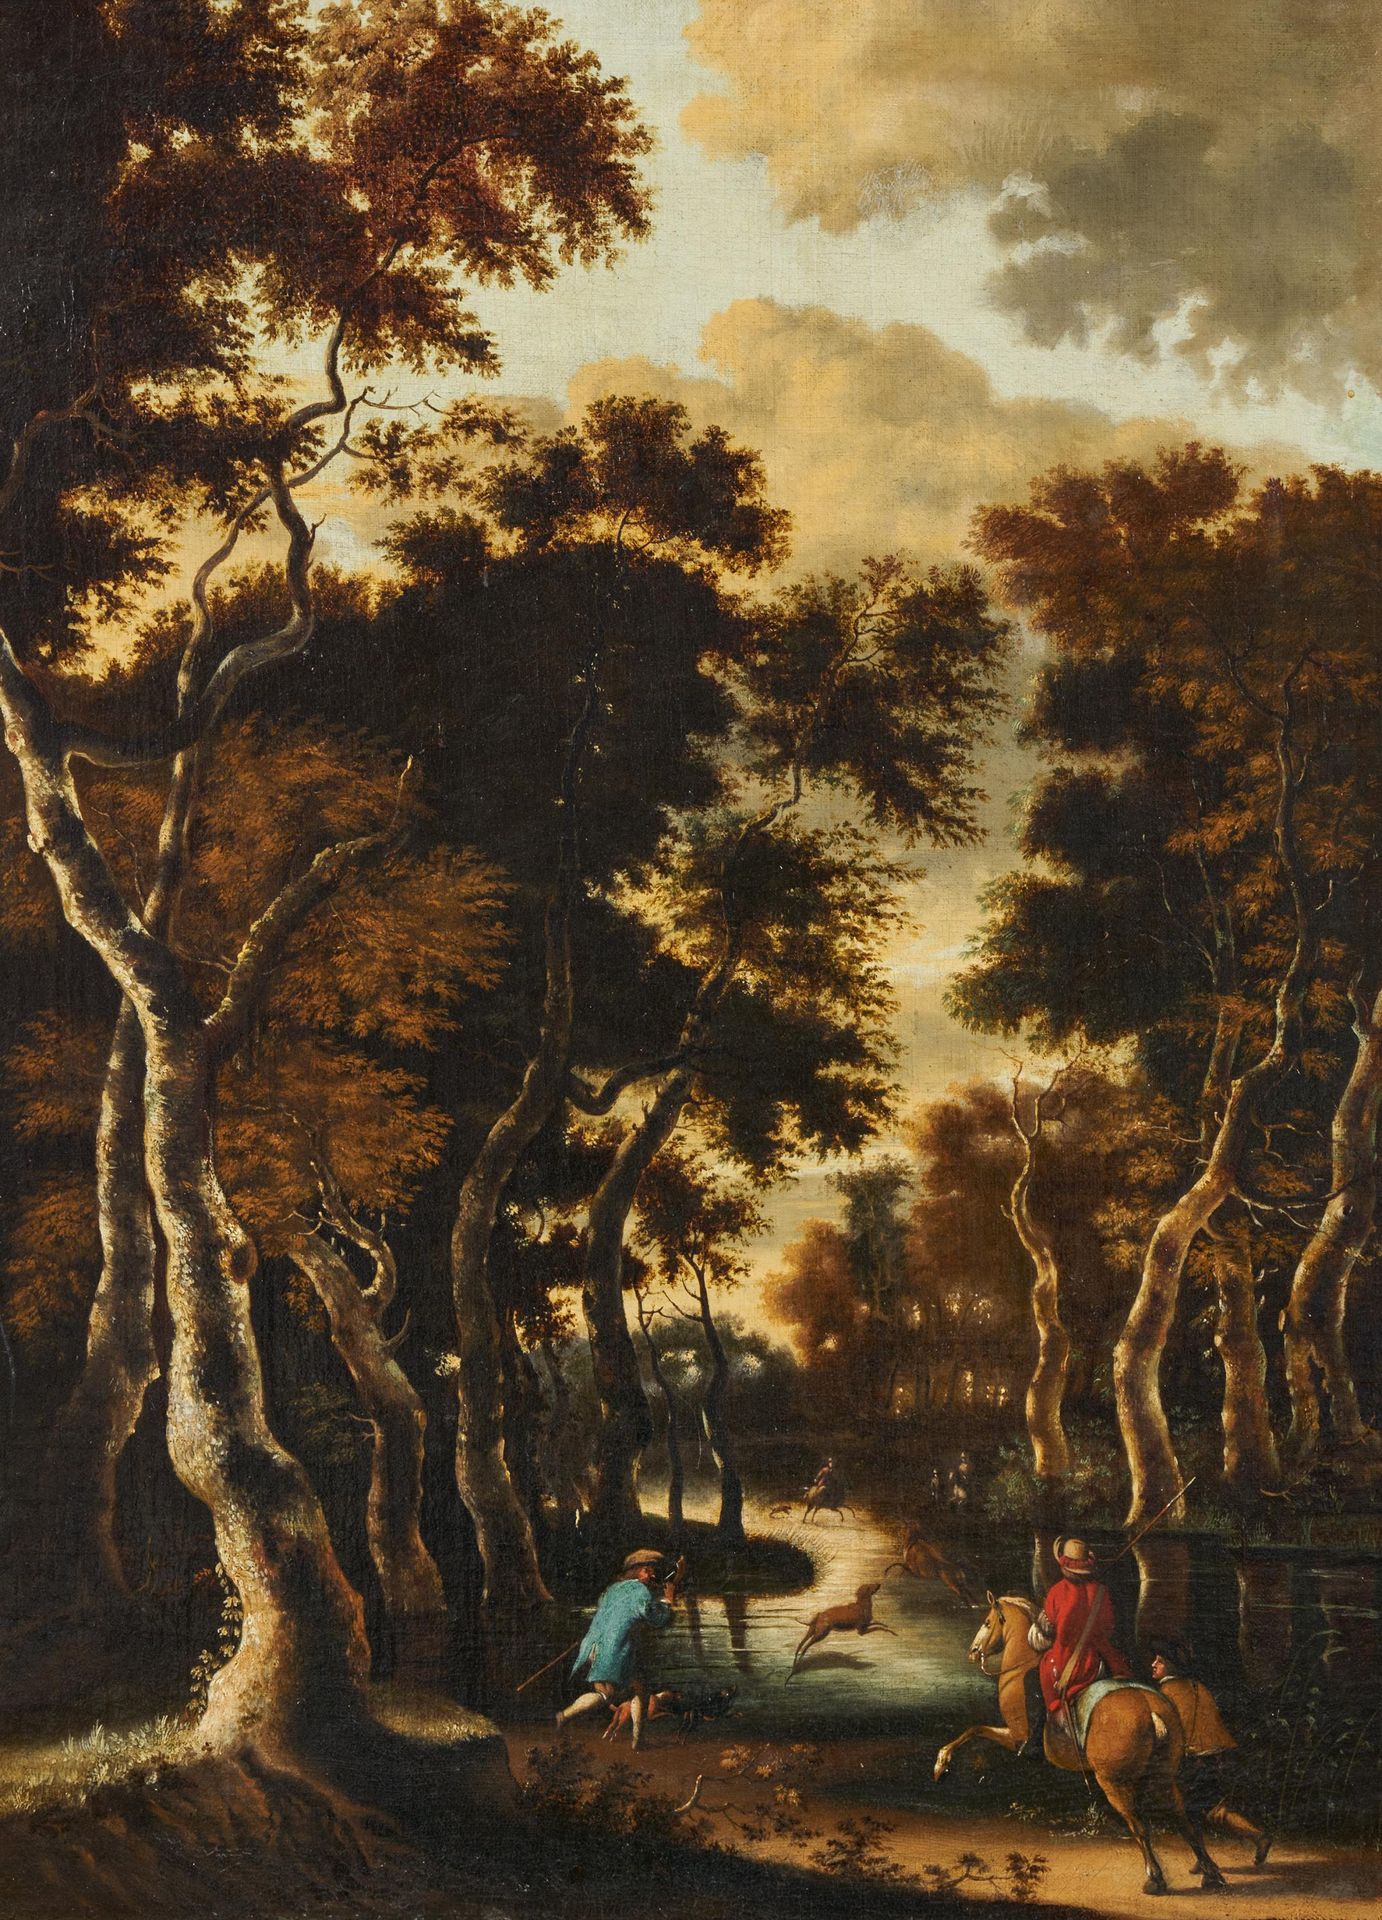 Jan Hackaert HACKAERT, JAN
Amsterdam 1629 - 1700

Cercle
Titre : Paysage foresti&hellip;